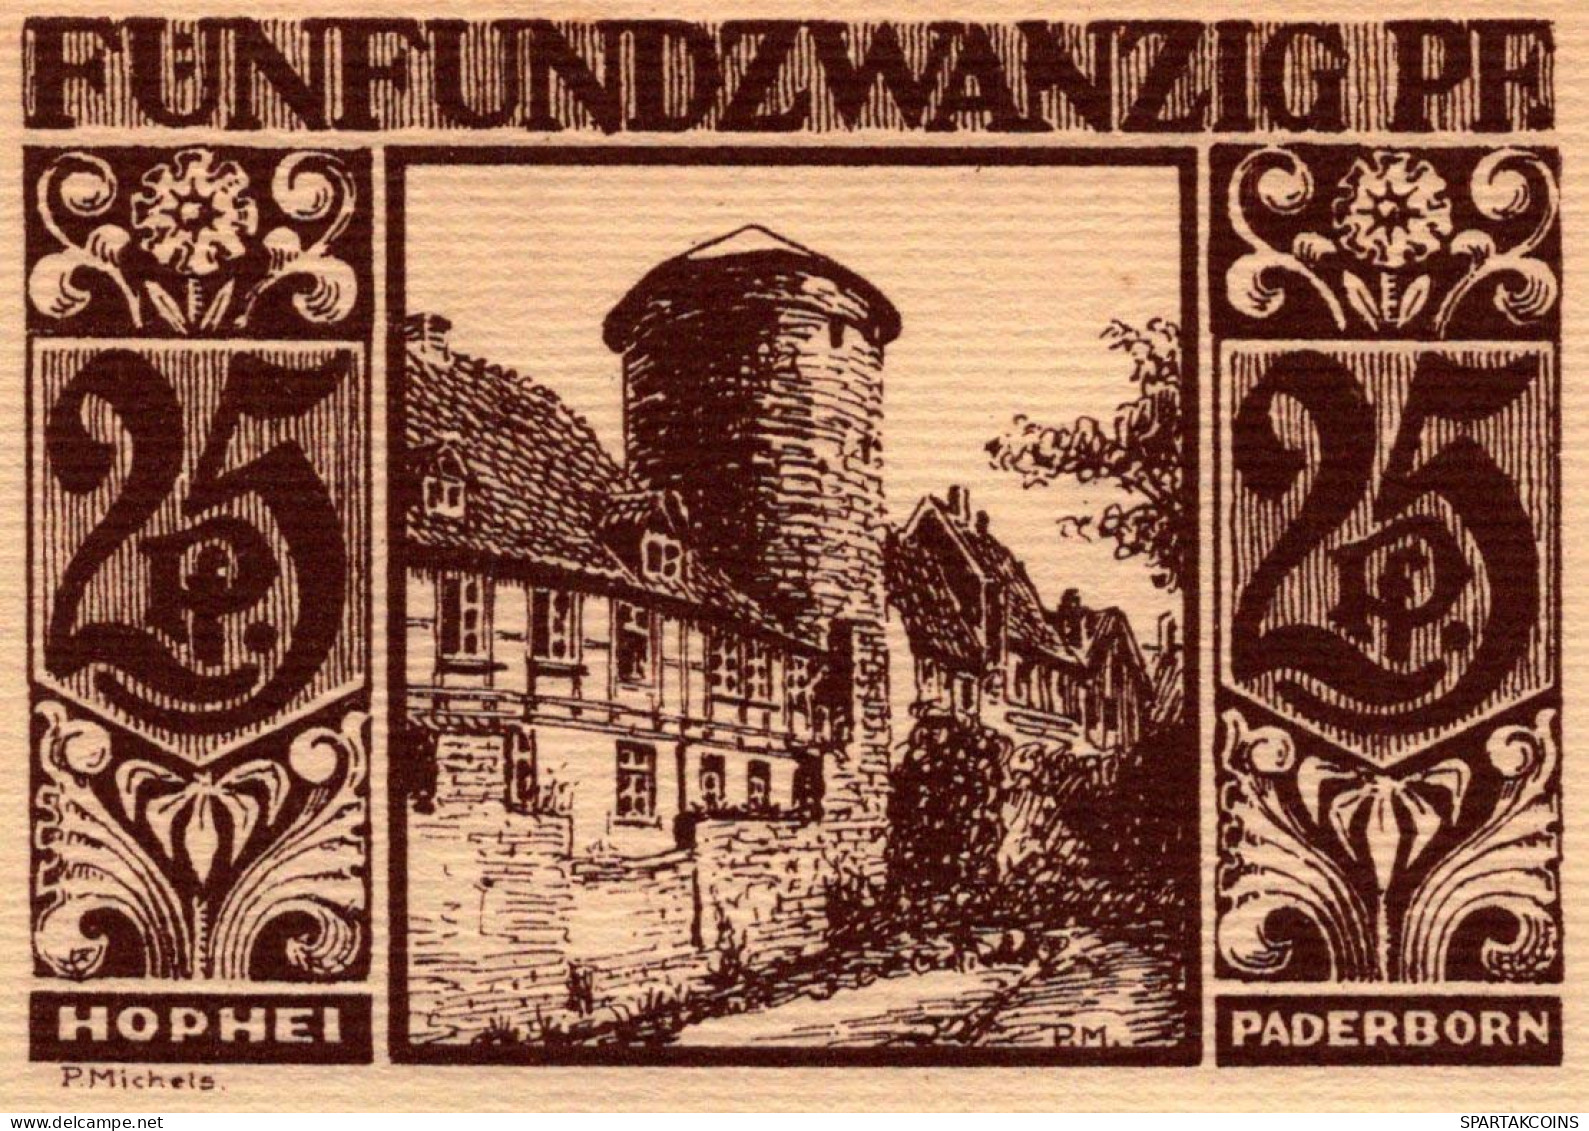 25 PFENNIG 1921 Stadt PADERBORN Westphalia DEUTSCHLAND Notgeld Banknote #PF461 - [11] Emissioni Locali